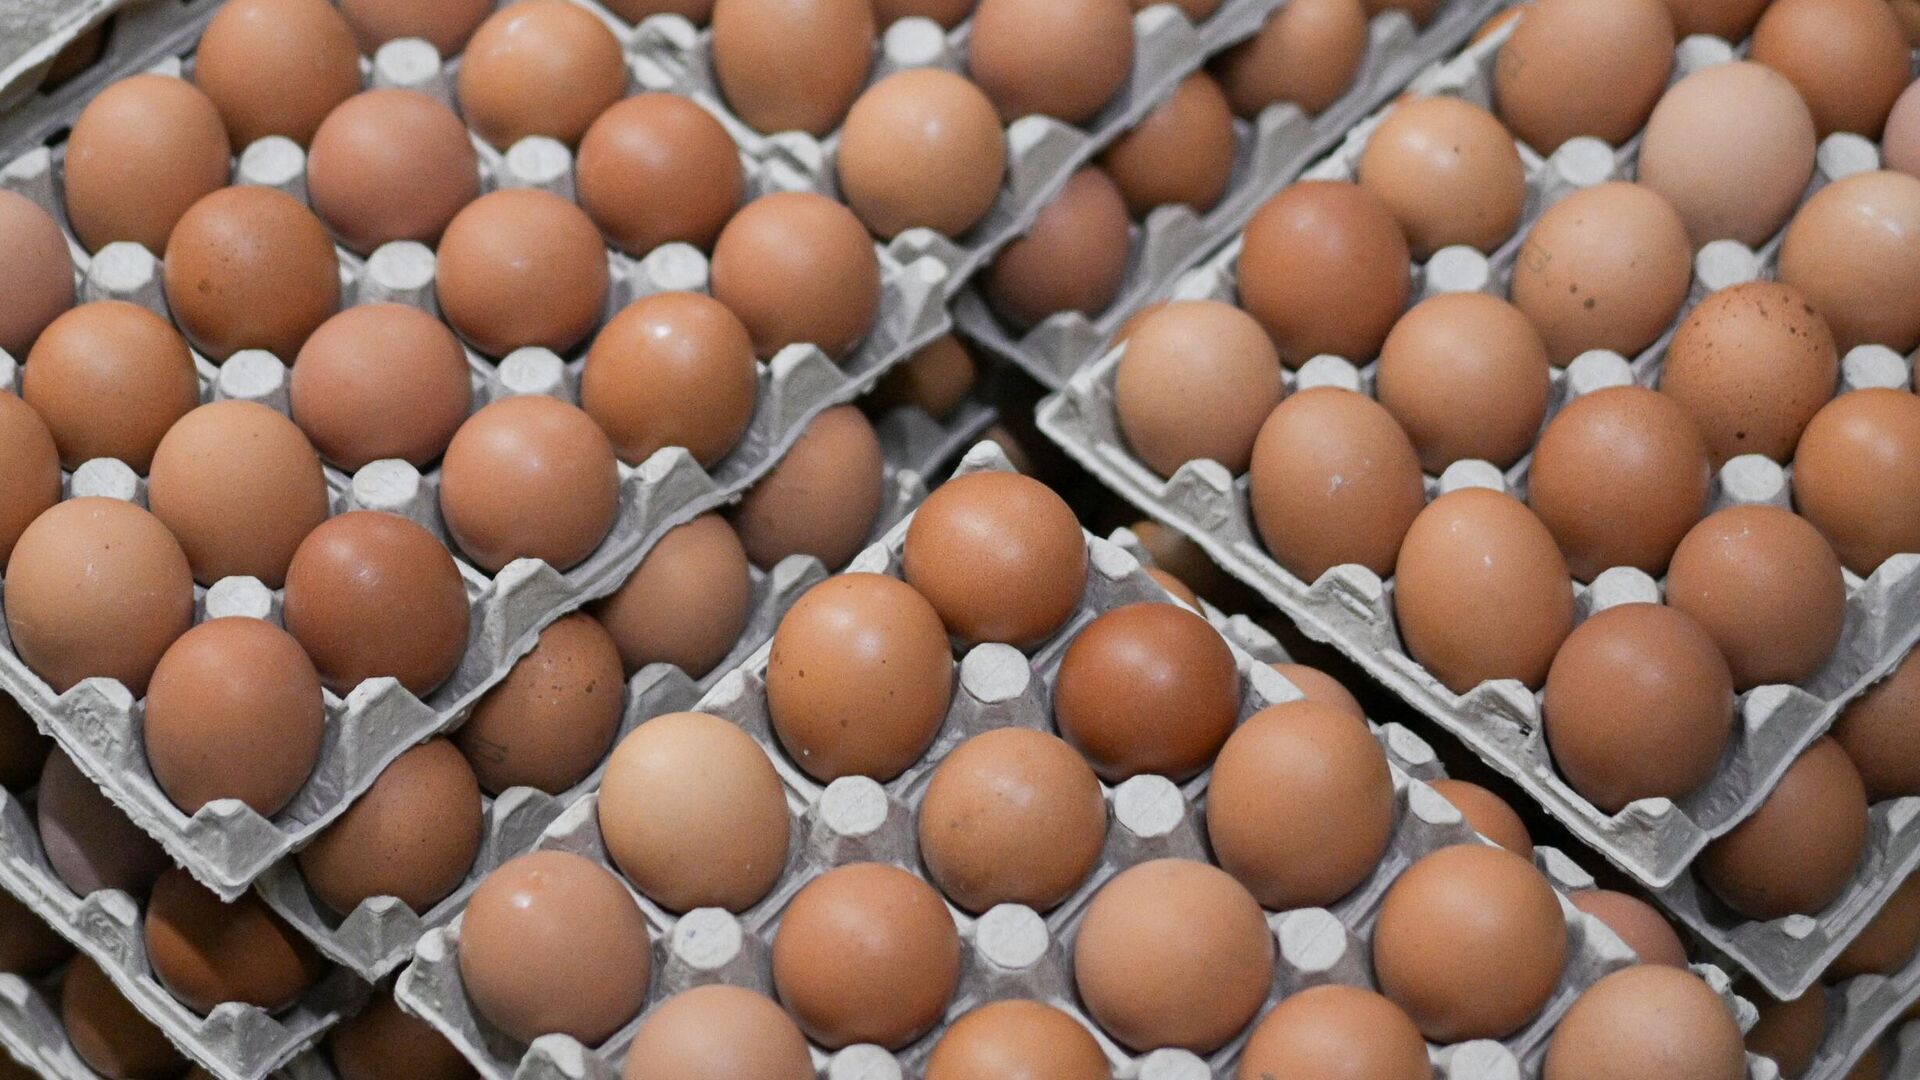 Задавшая вопрос Путину жительница Краснодара сообщила о падении цен на яйца